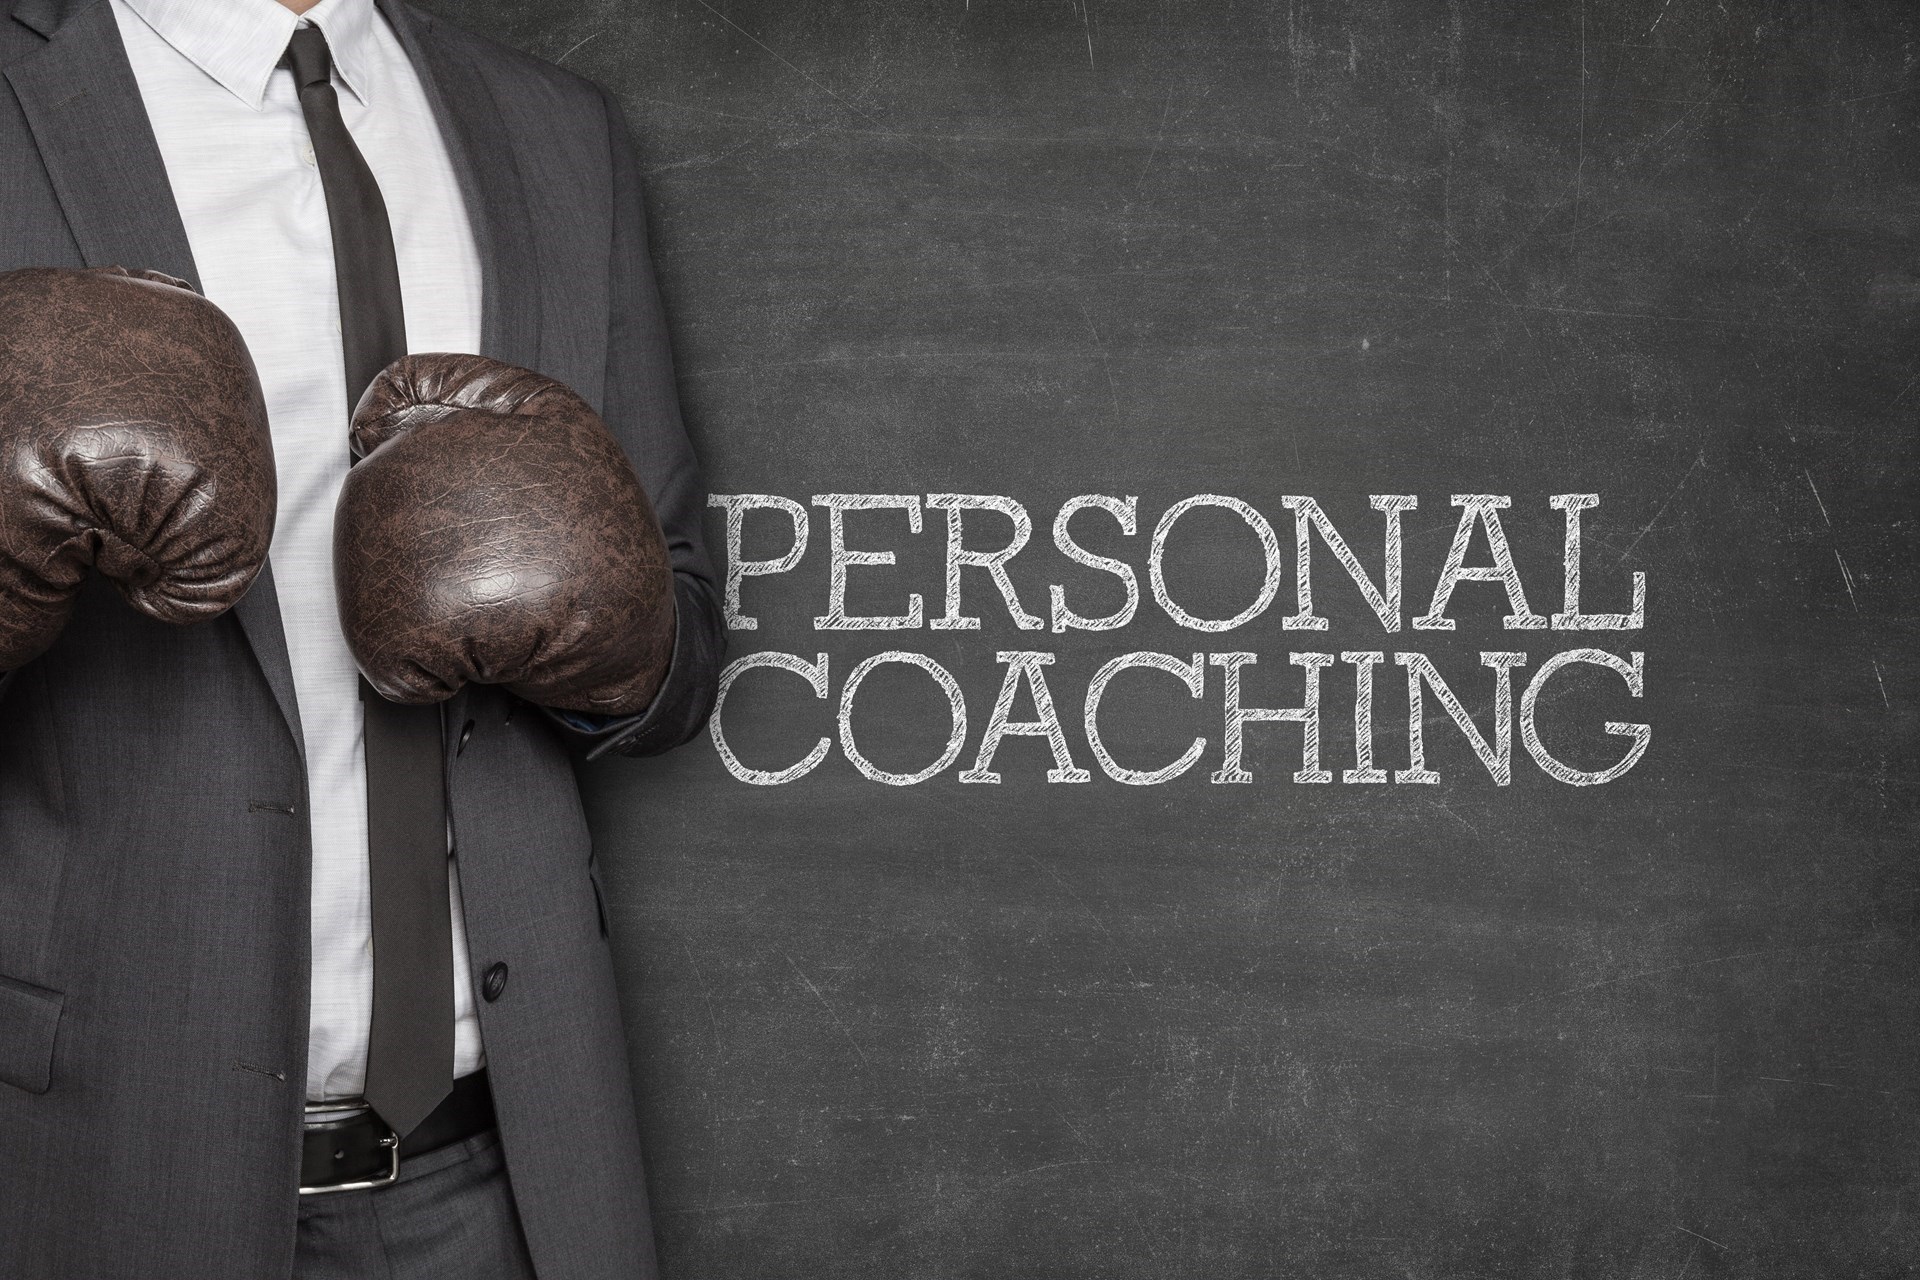 Personal coach Utrecht